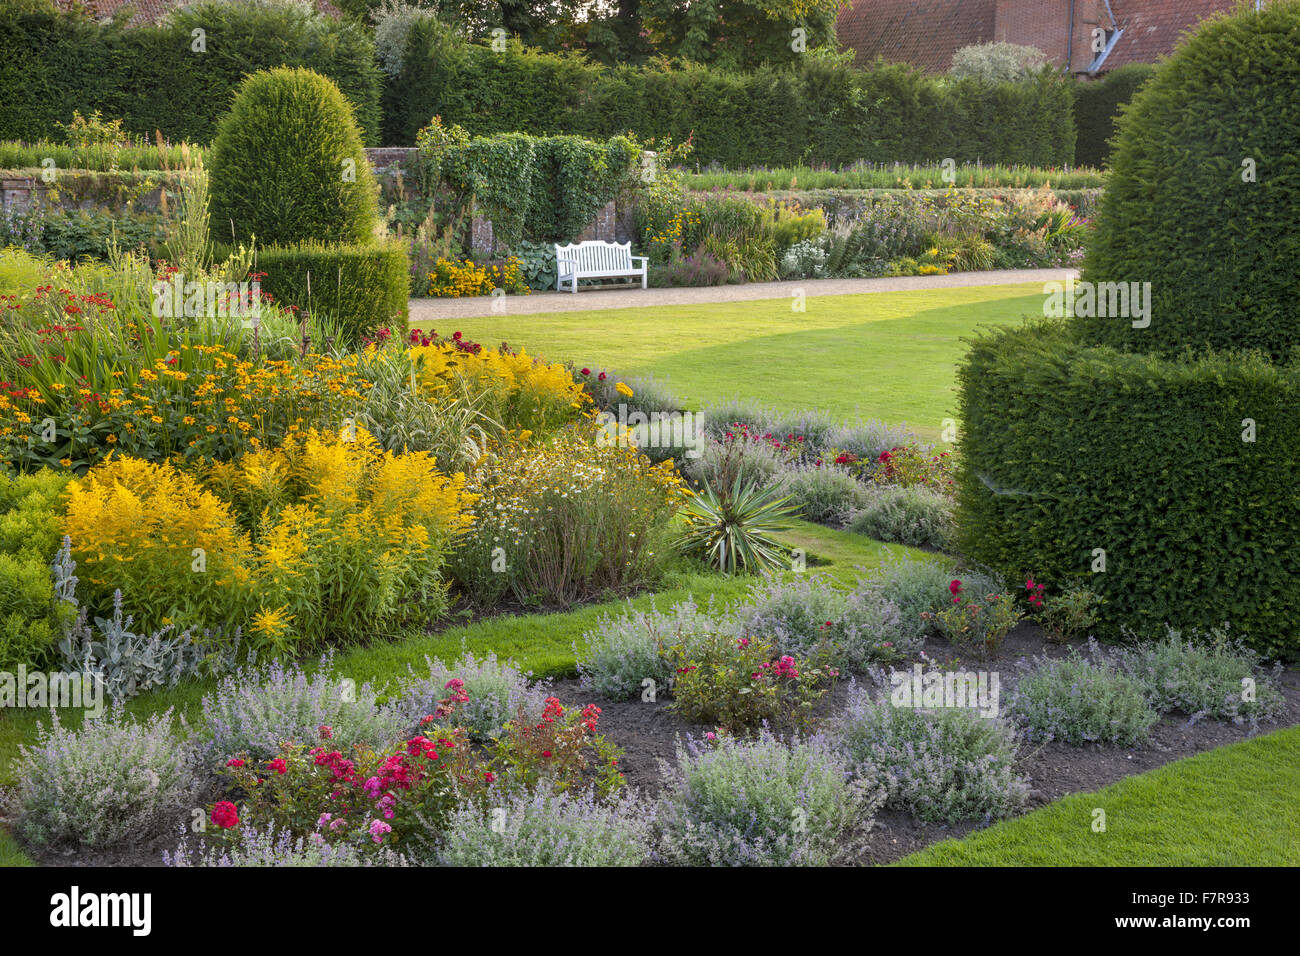 Die Parterre-Gartens in Blickling Estate, Norfolk. Blickling ist ein Turm aus rotem Backstein jakobinischen Herrenhaus, sitzen in wunderschönen Gärten und Parks. Stockfoto